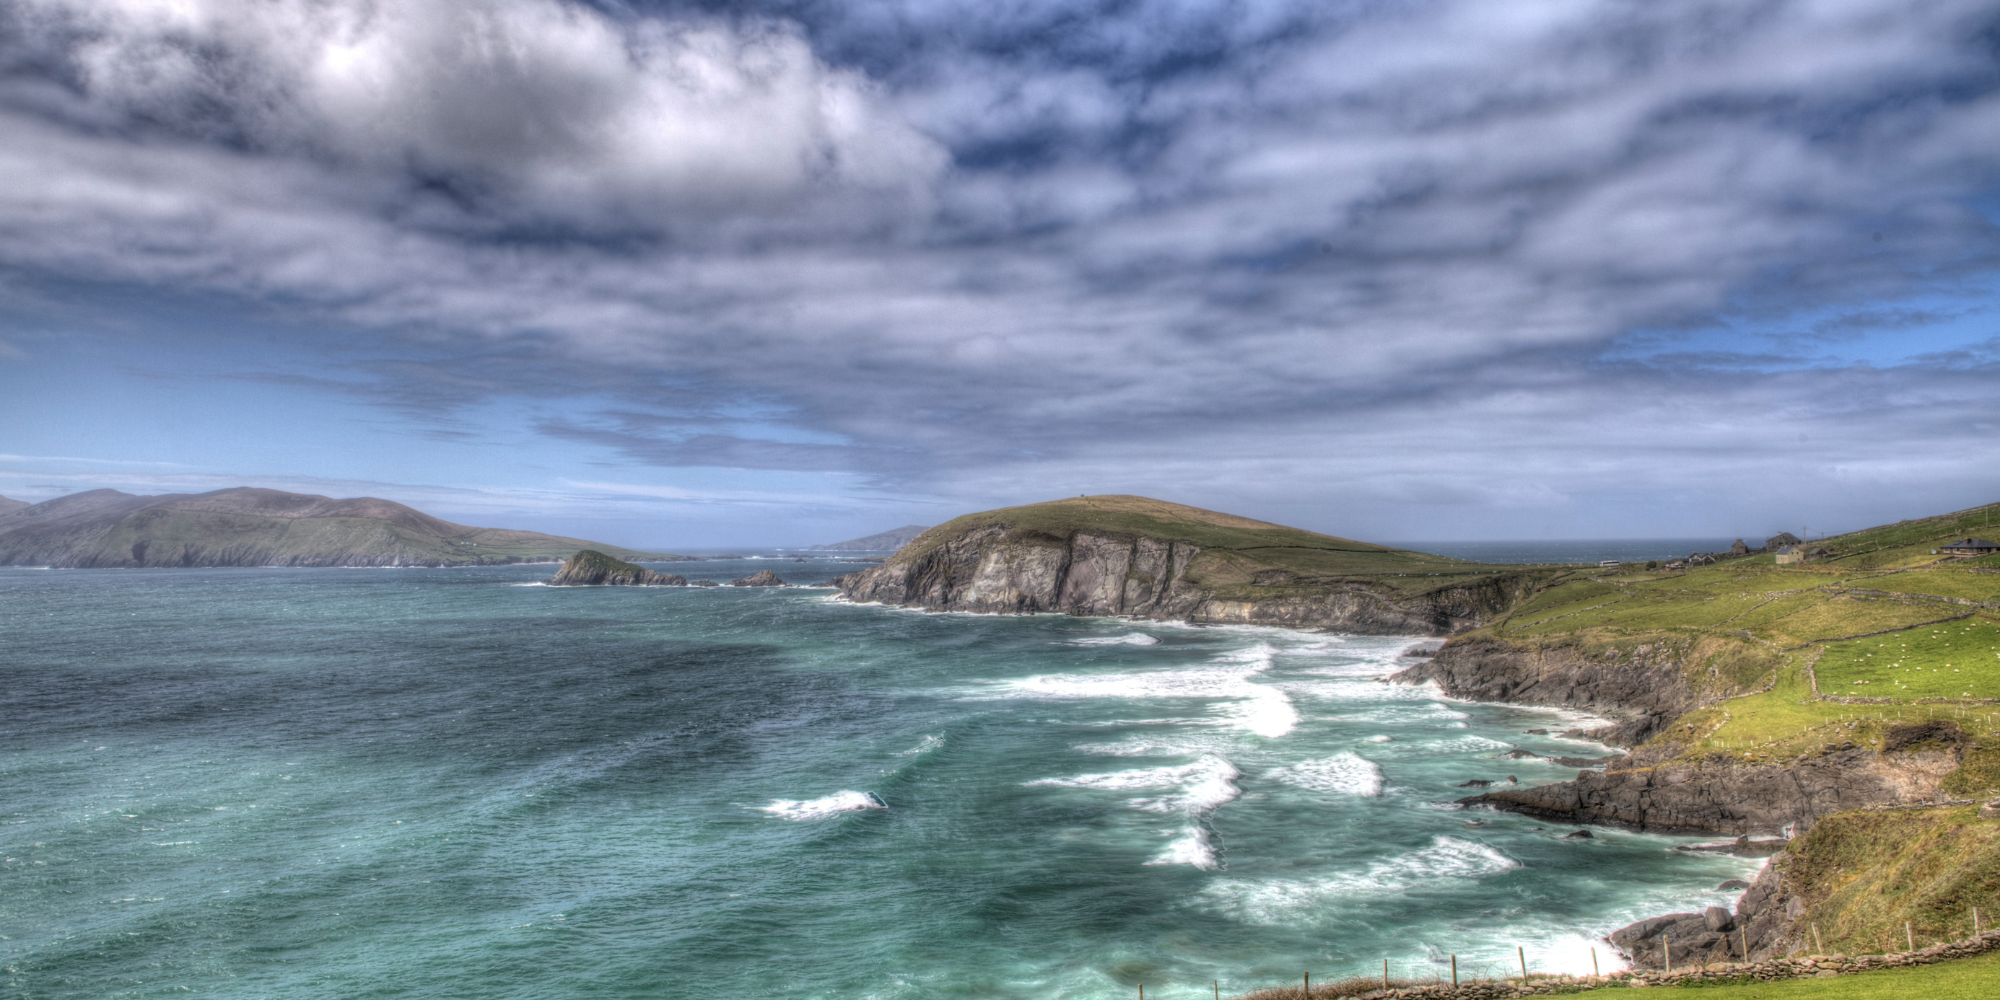 Coast and seascape of the Dingle Peninsula